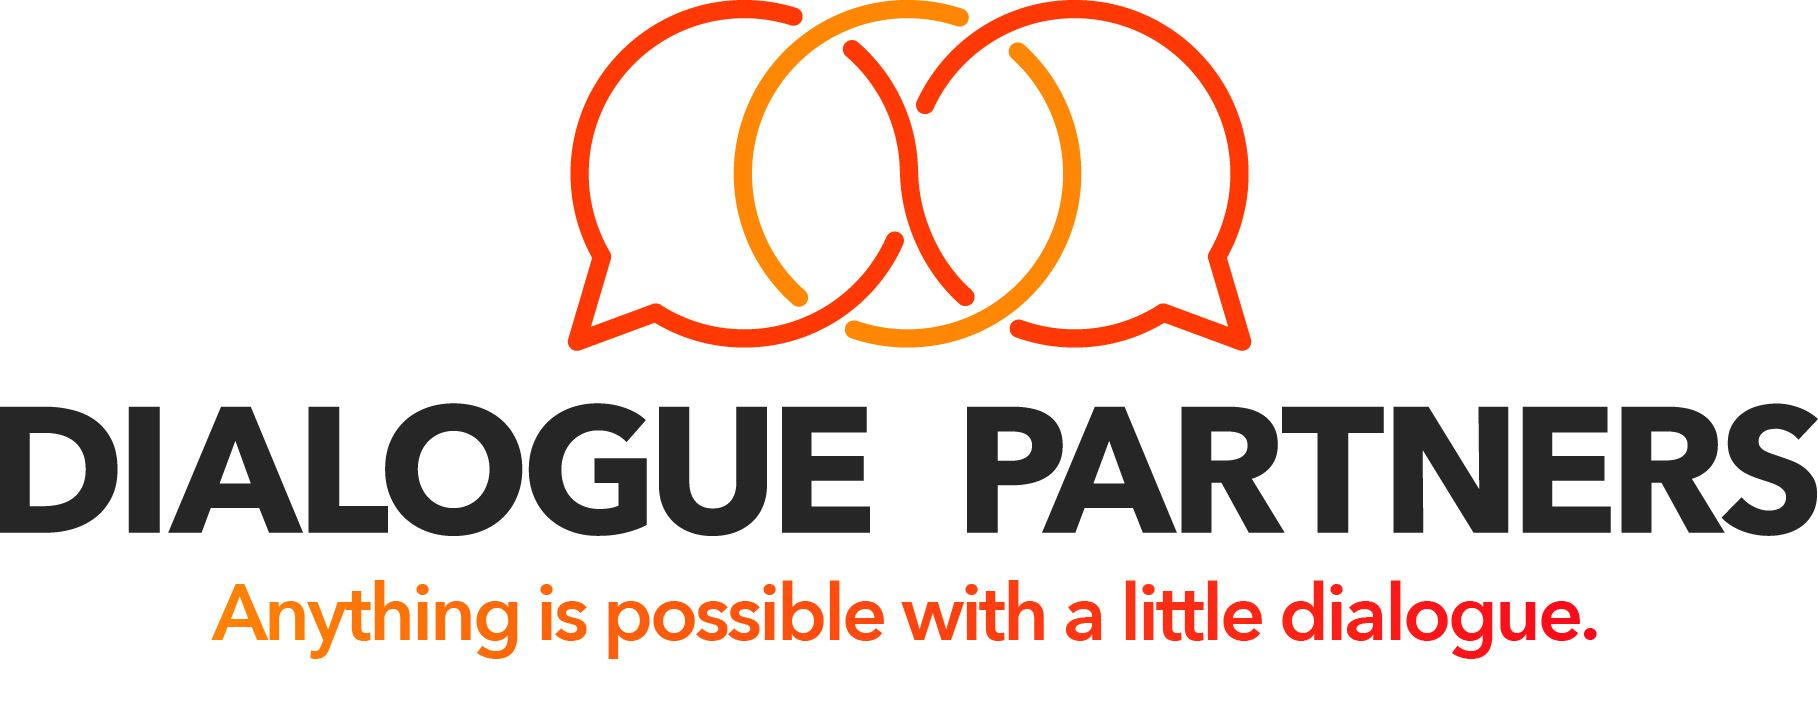 Dialogue Partners, Inc.